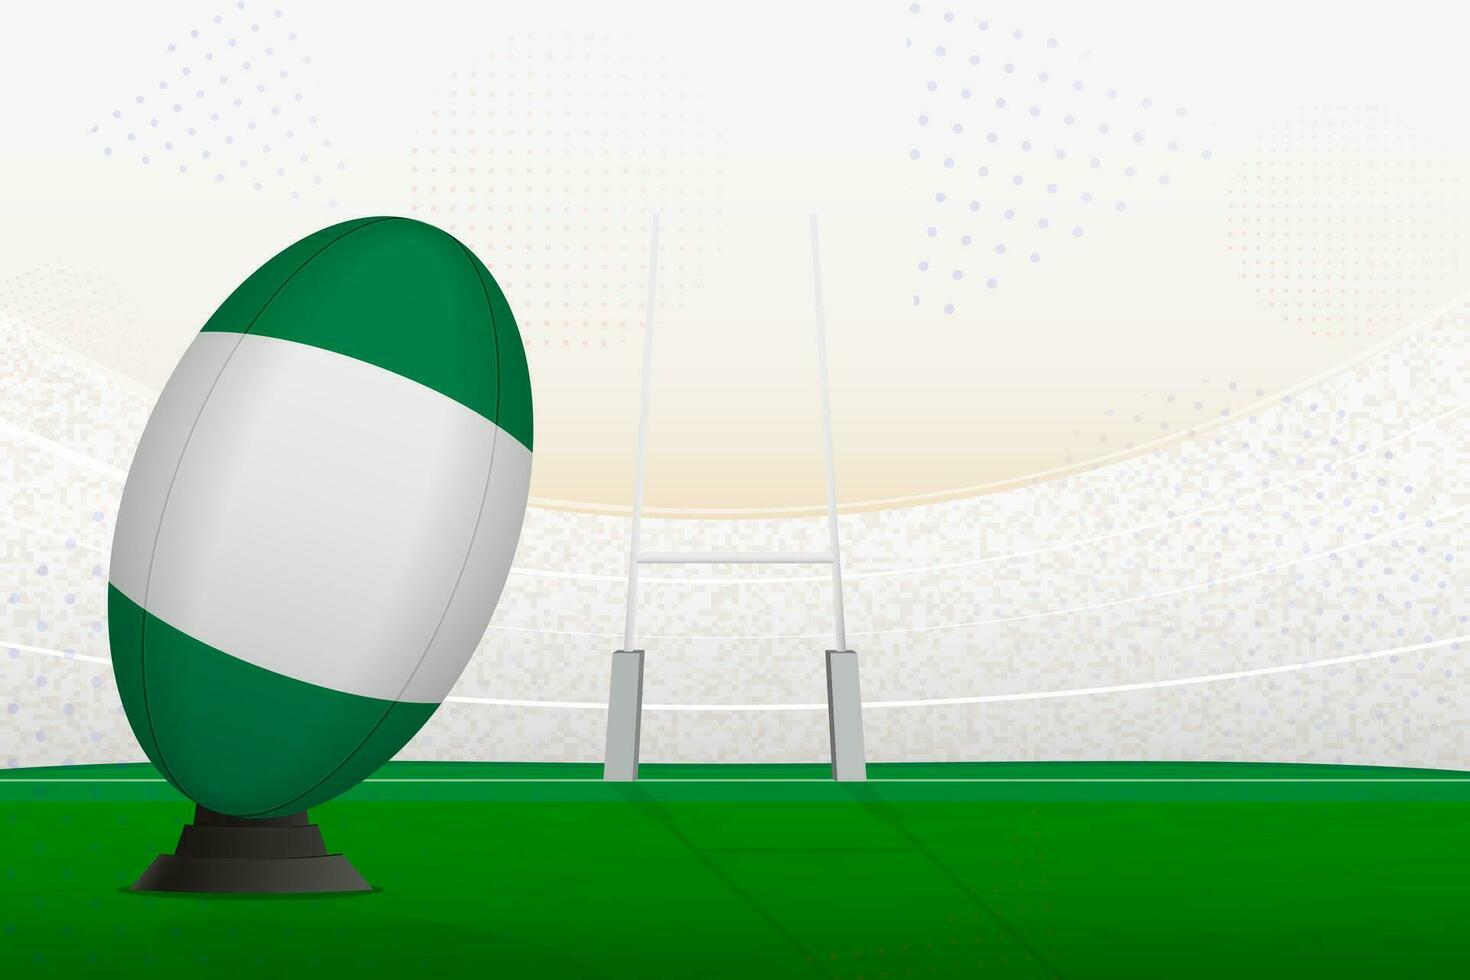 Nigeria nationaal team rugby bal Aan rugby stadion en doel berichten, voorbereidingen treffen voor een straf of vrij trap. vector